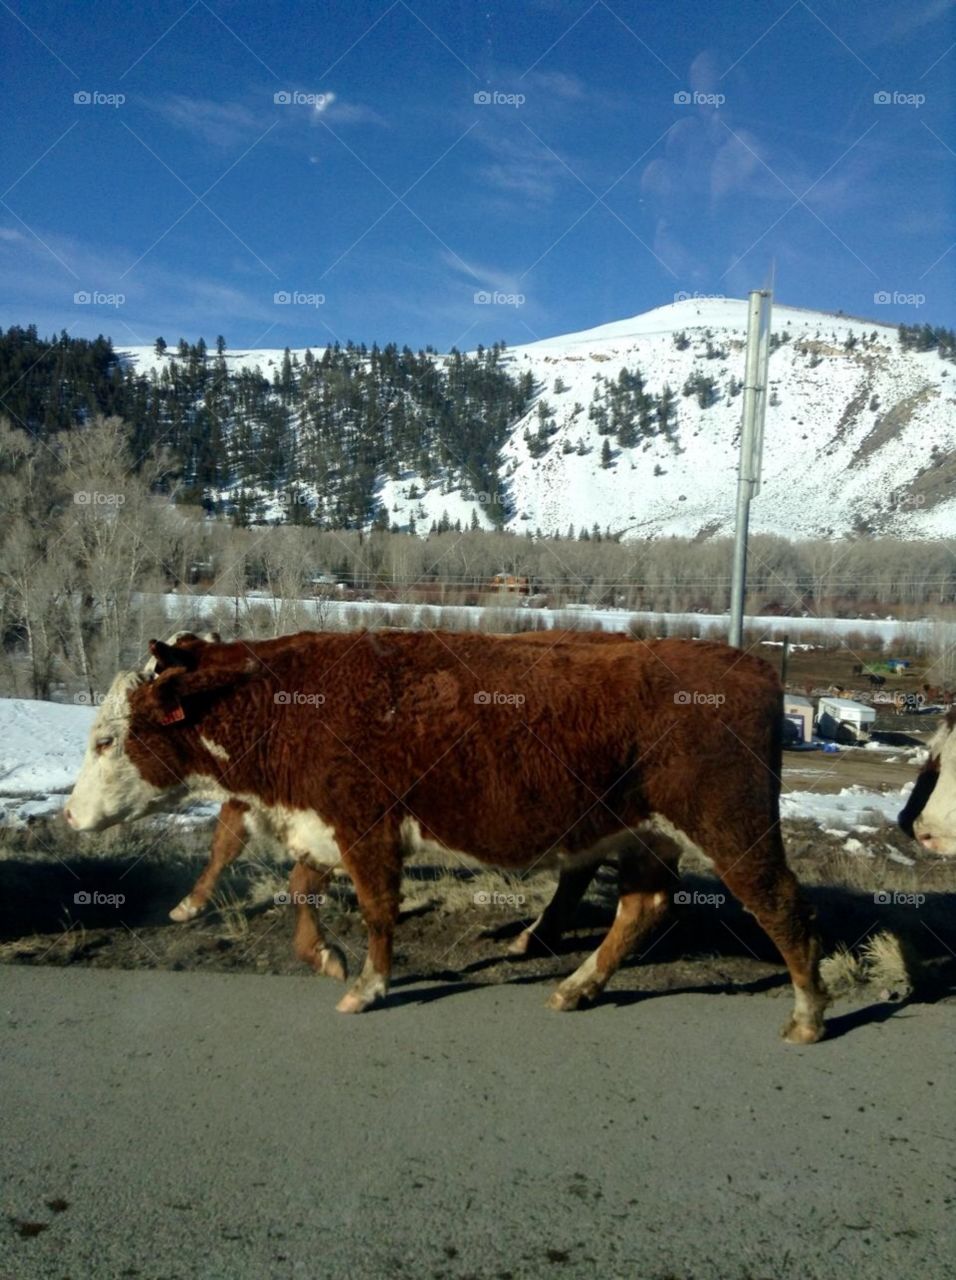 Cows in Colorado 